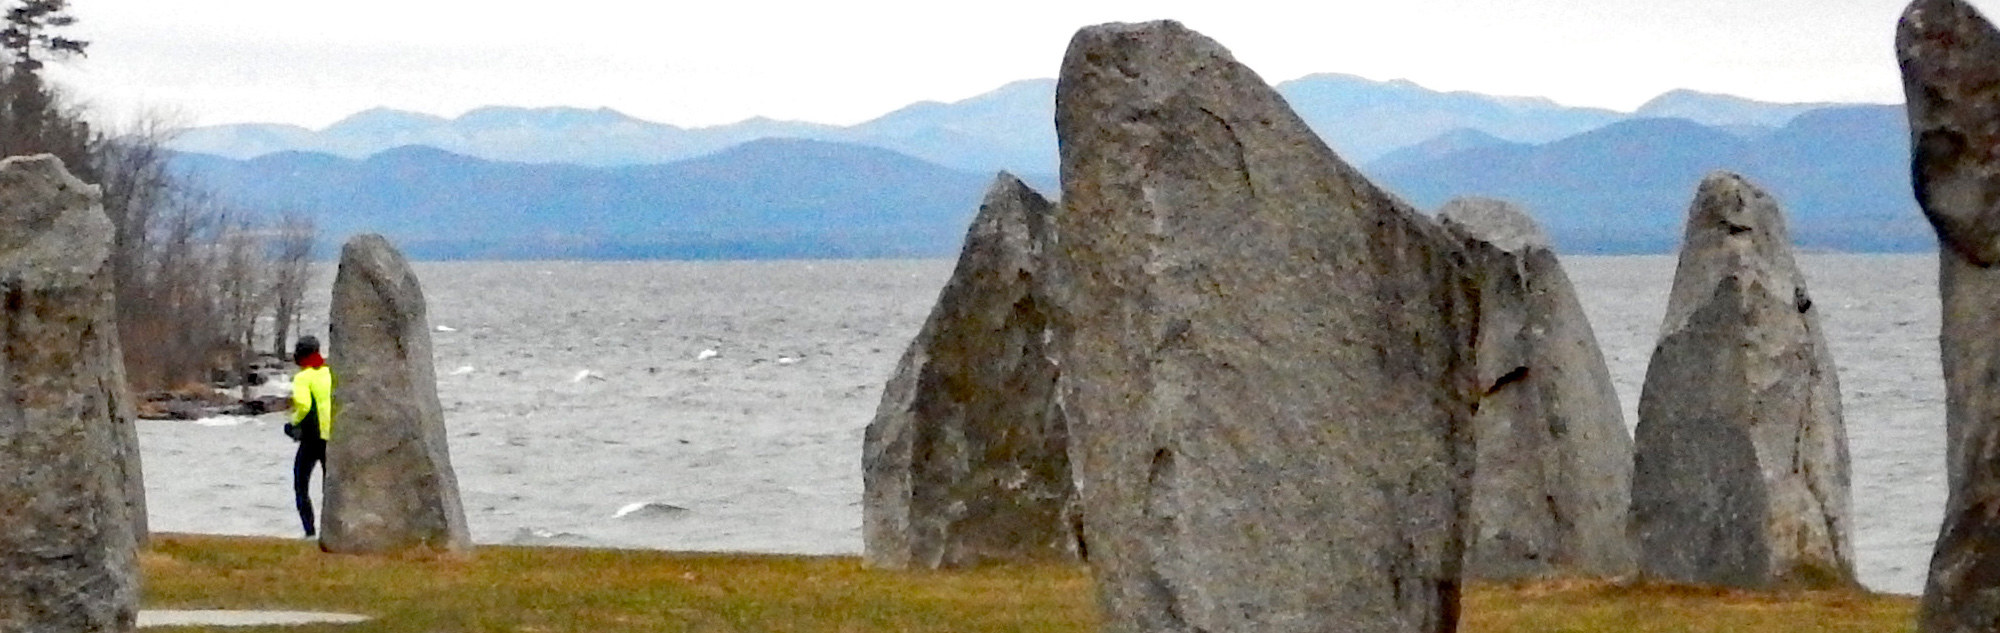 Lake Champlain and mini stonehenge